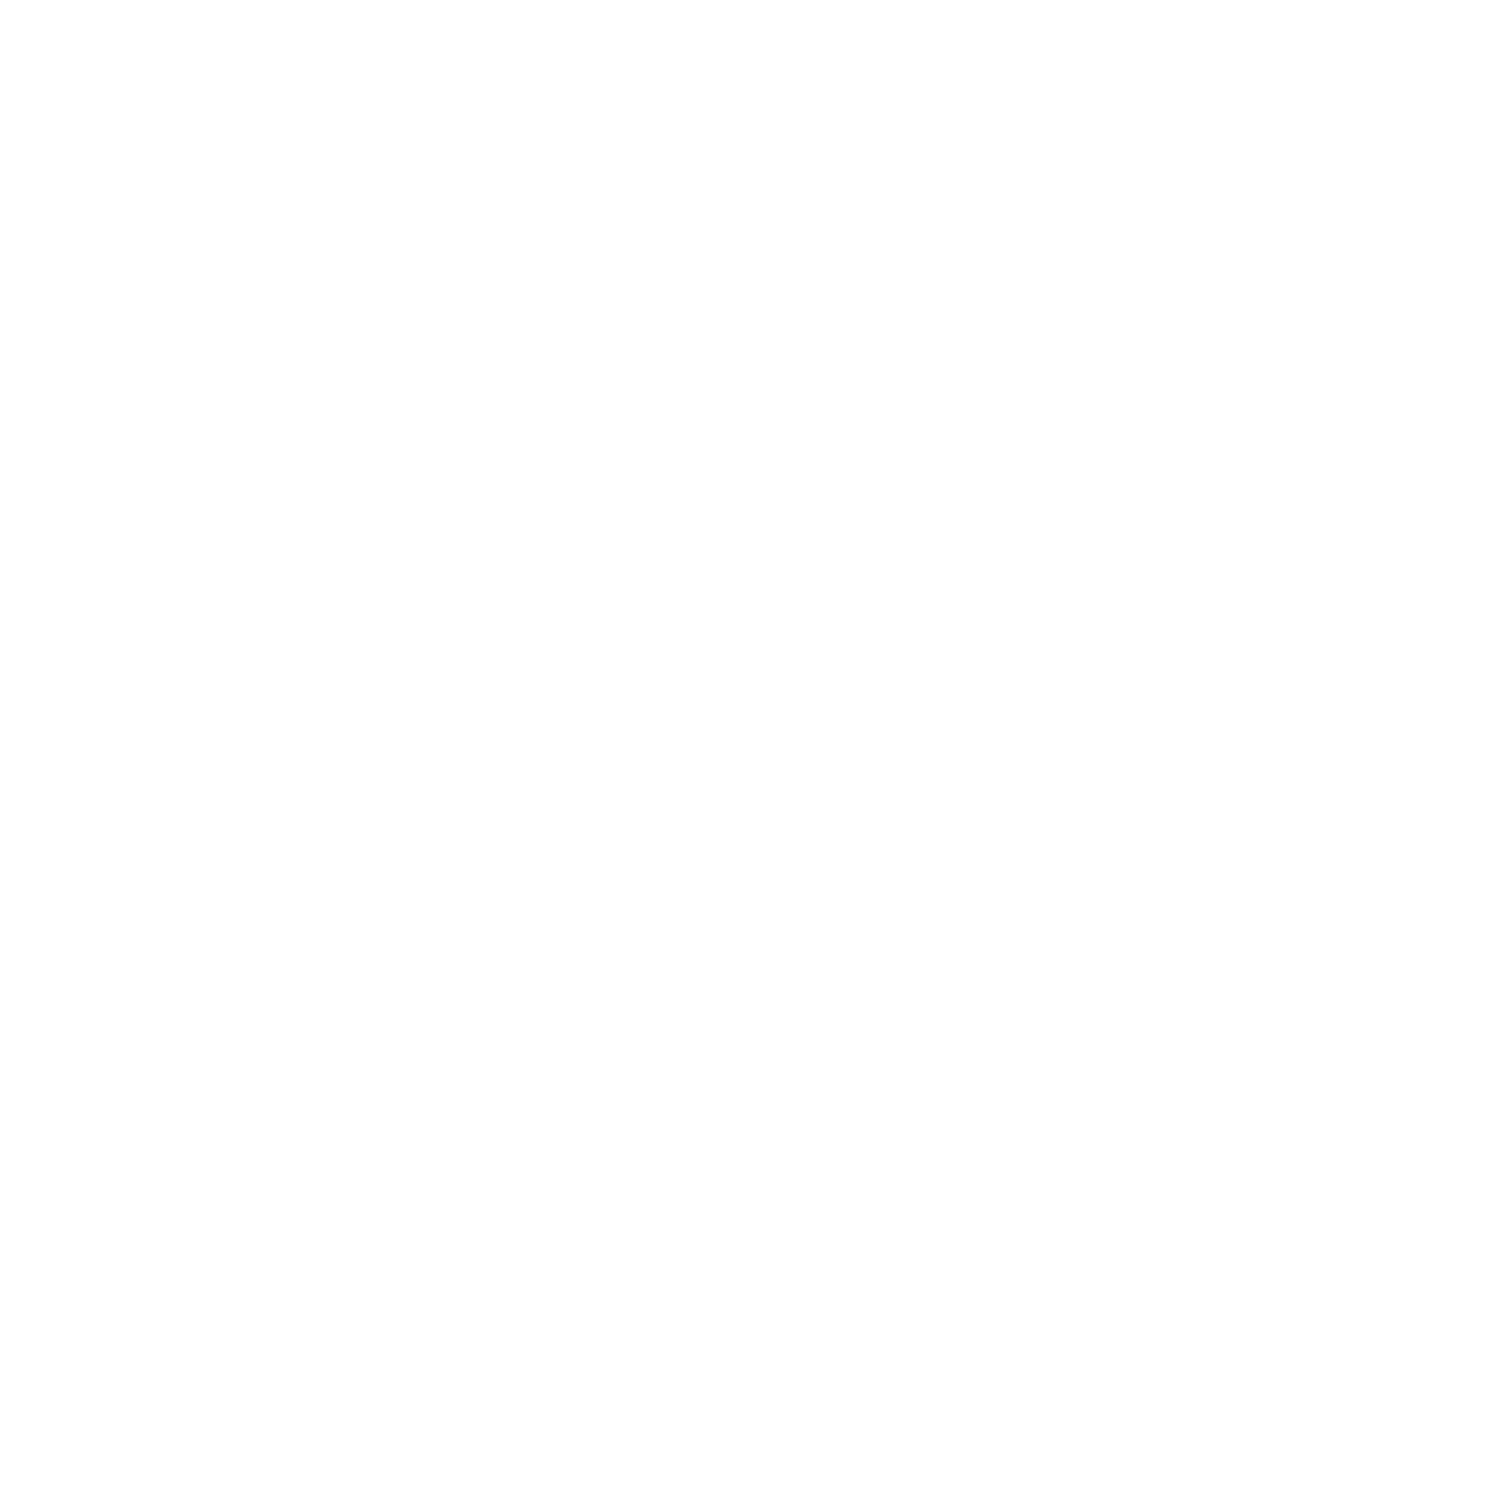 Caan Rose Estates Ltd - Slough : Letting agents in Windsor Berkshire